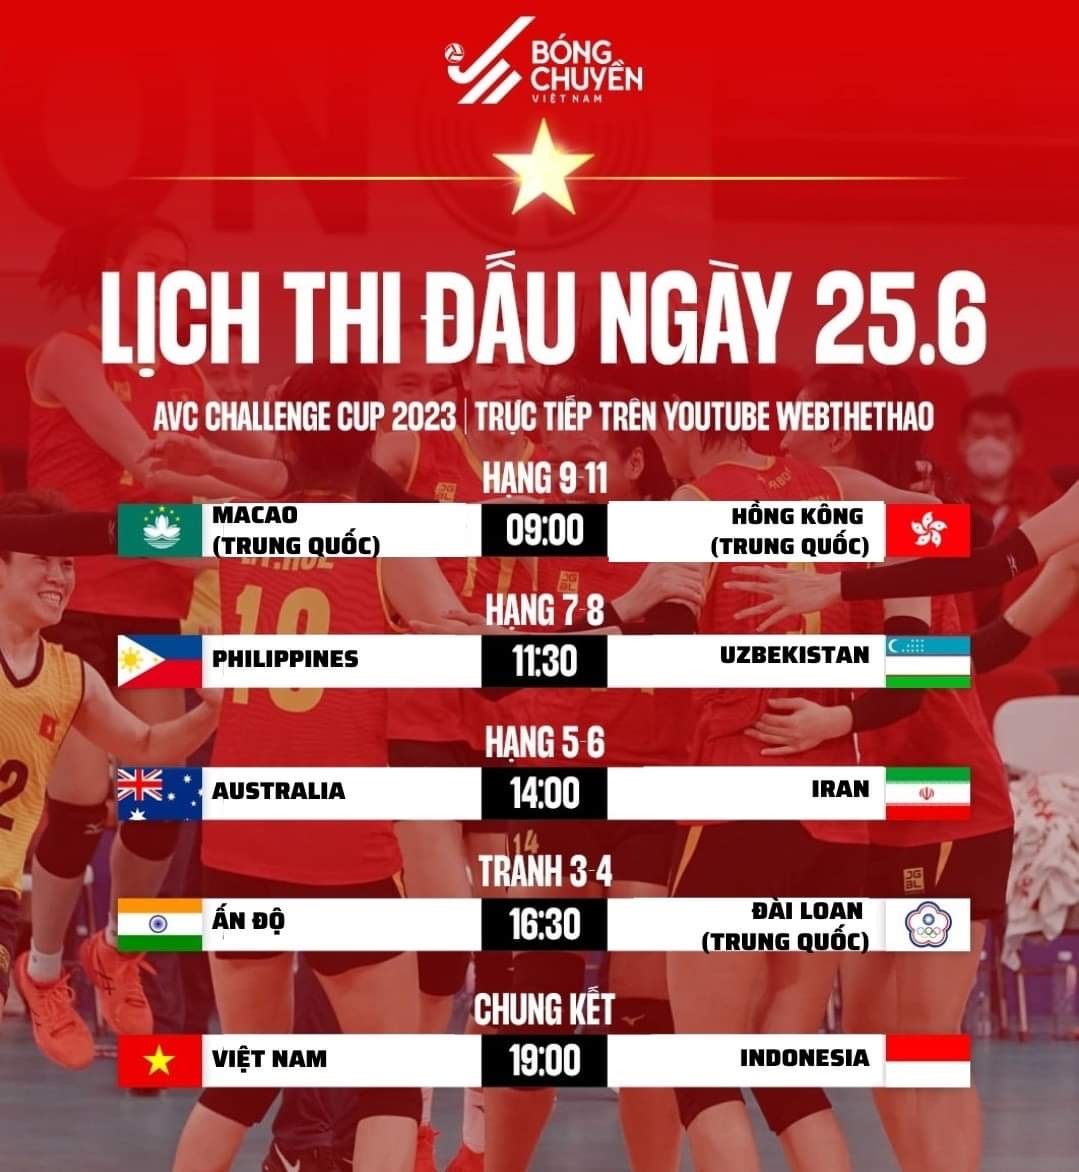 Lịch thi đấu chi tiết các trận ngày 25.6. Ảnh: Bóng chuyền Việt Nam